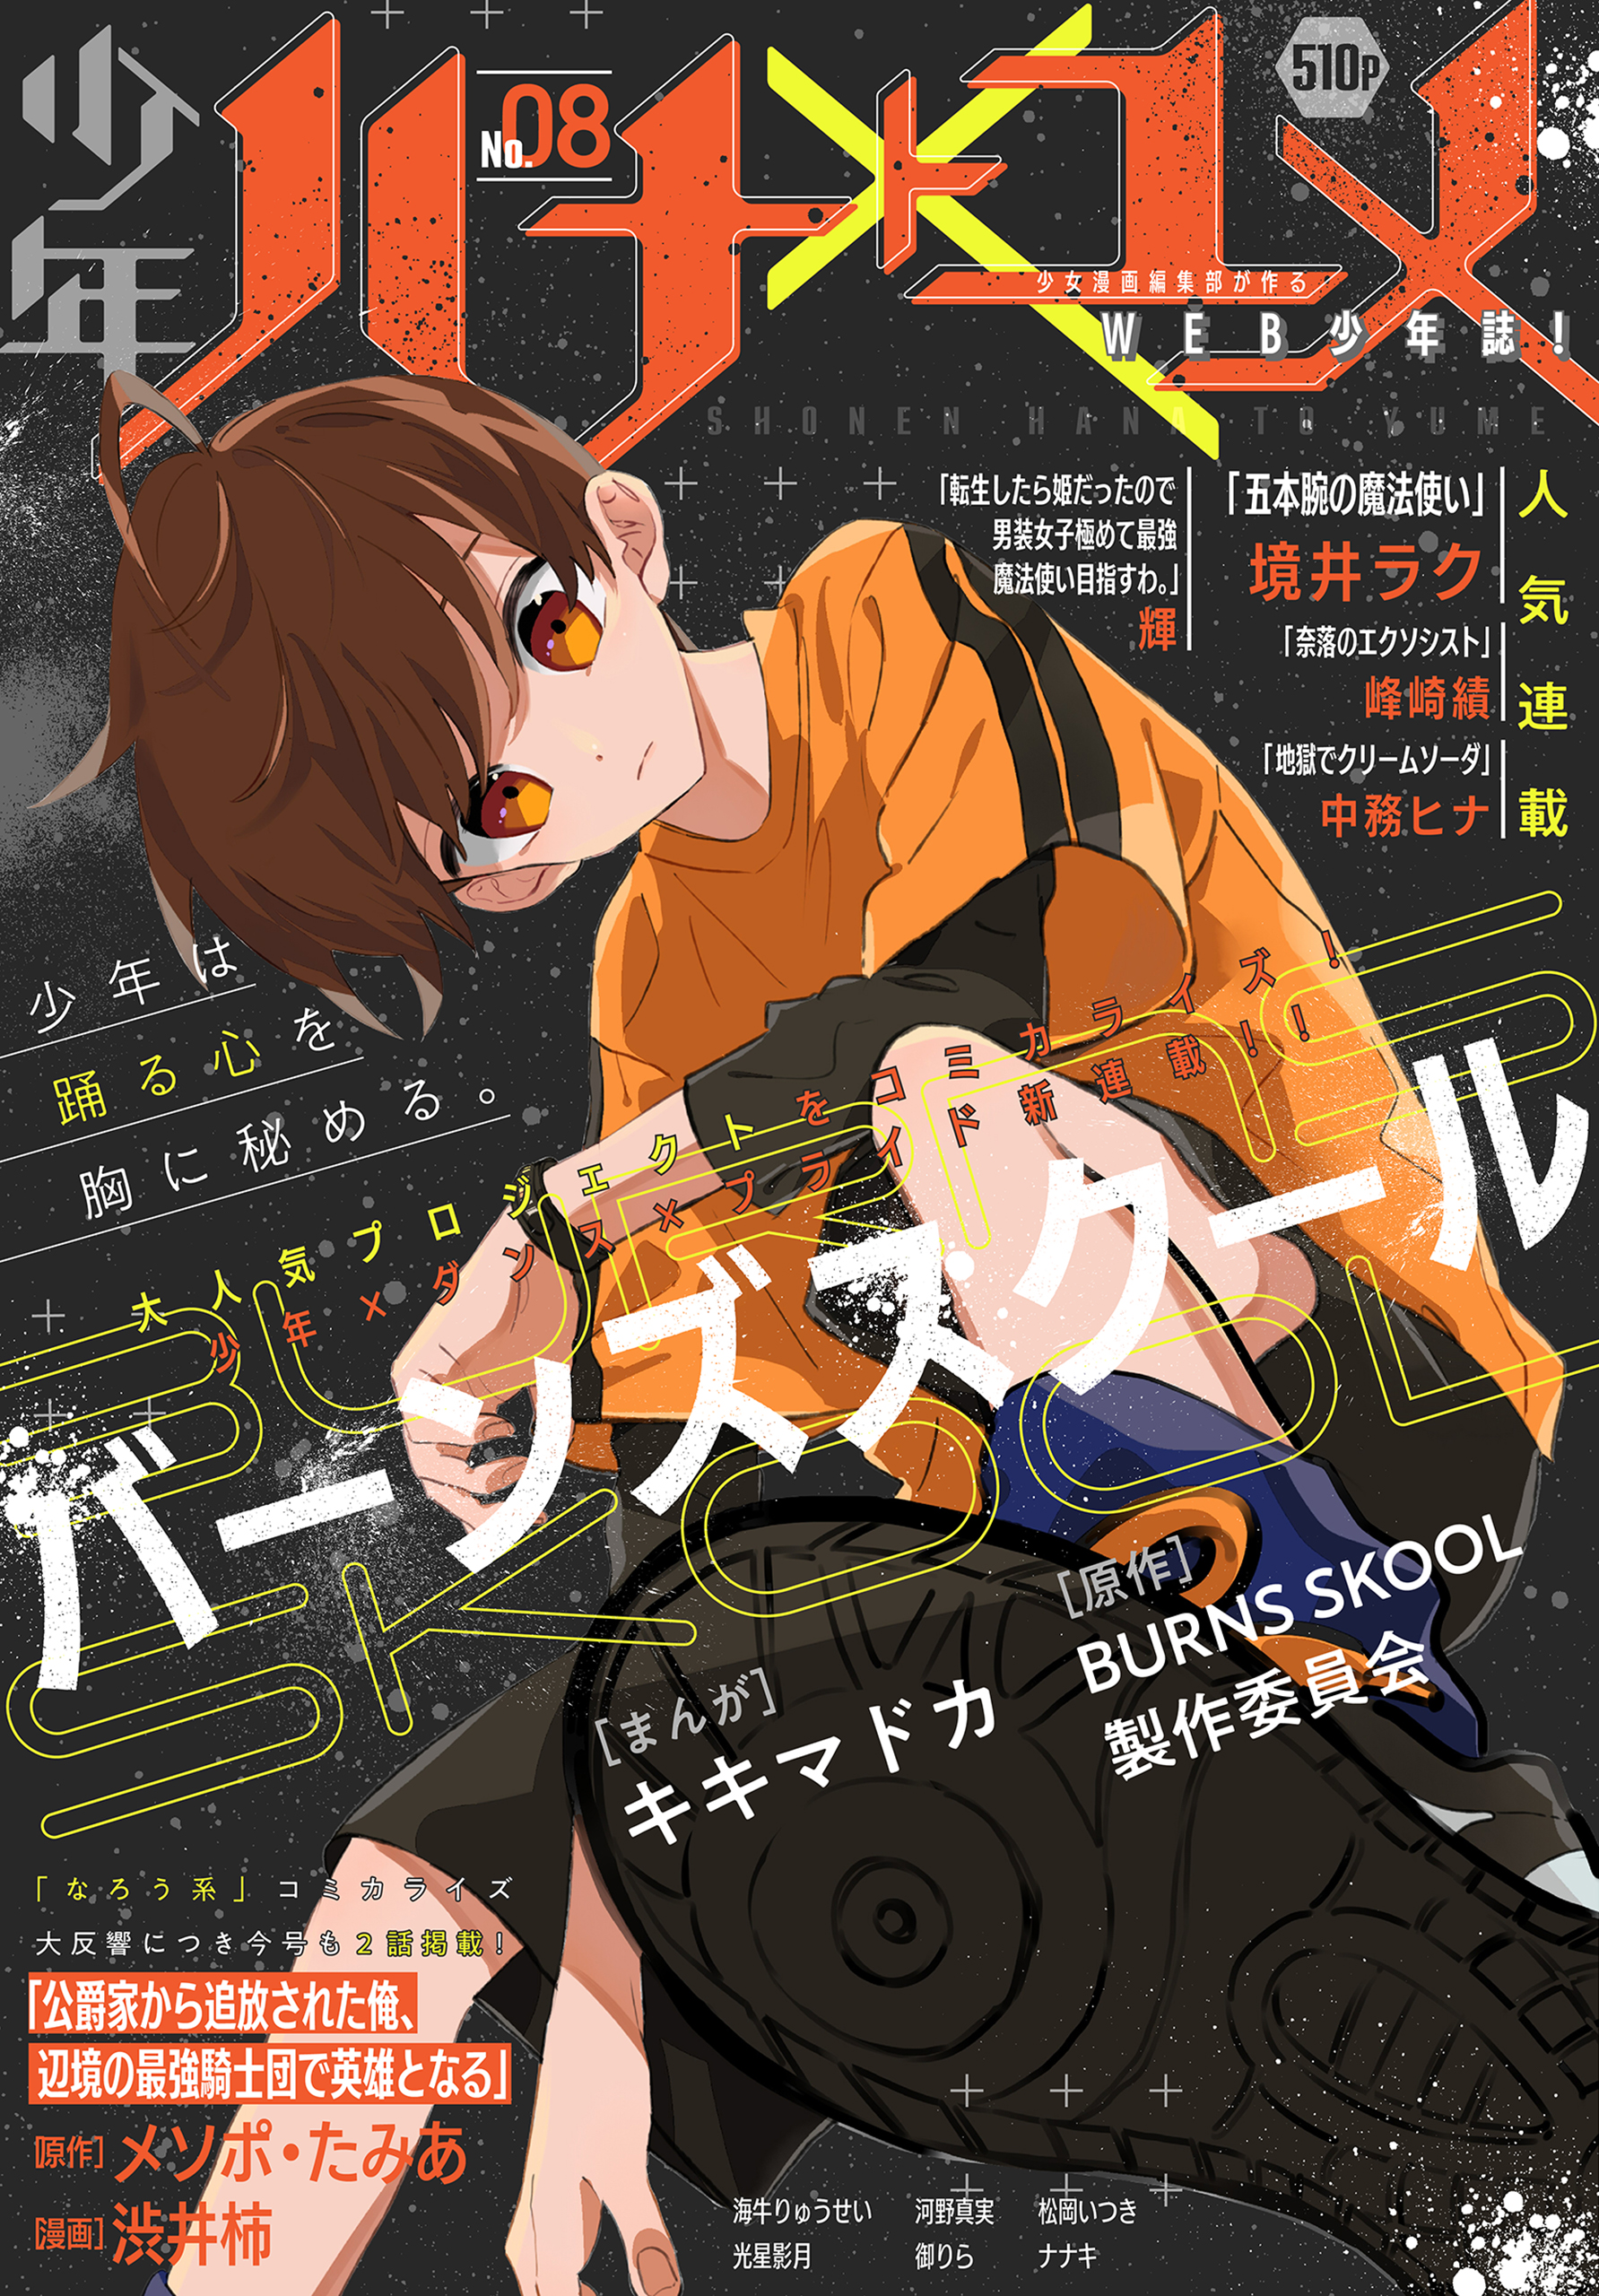 少年ハナトユメ 8号 - キキマドカ/BURNS SKOOL 製作委員会 - 漫画